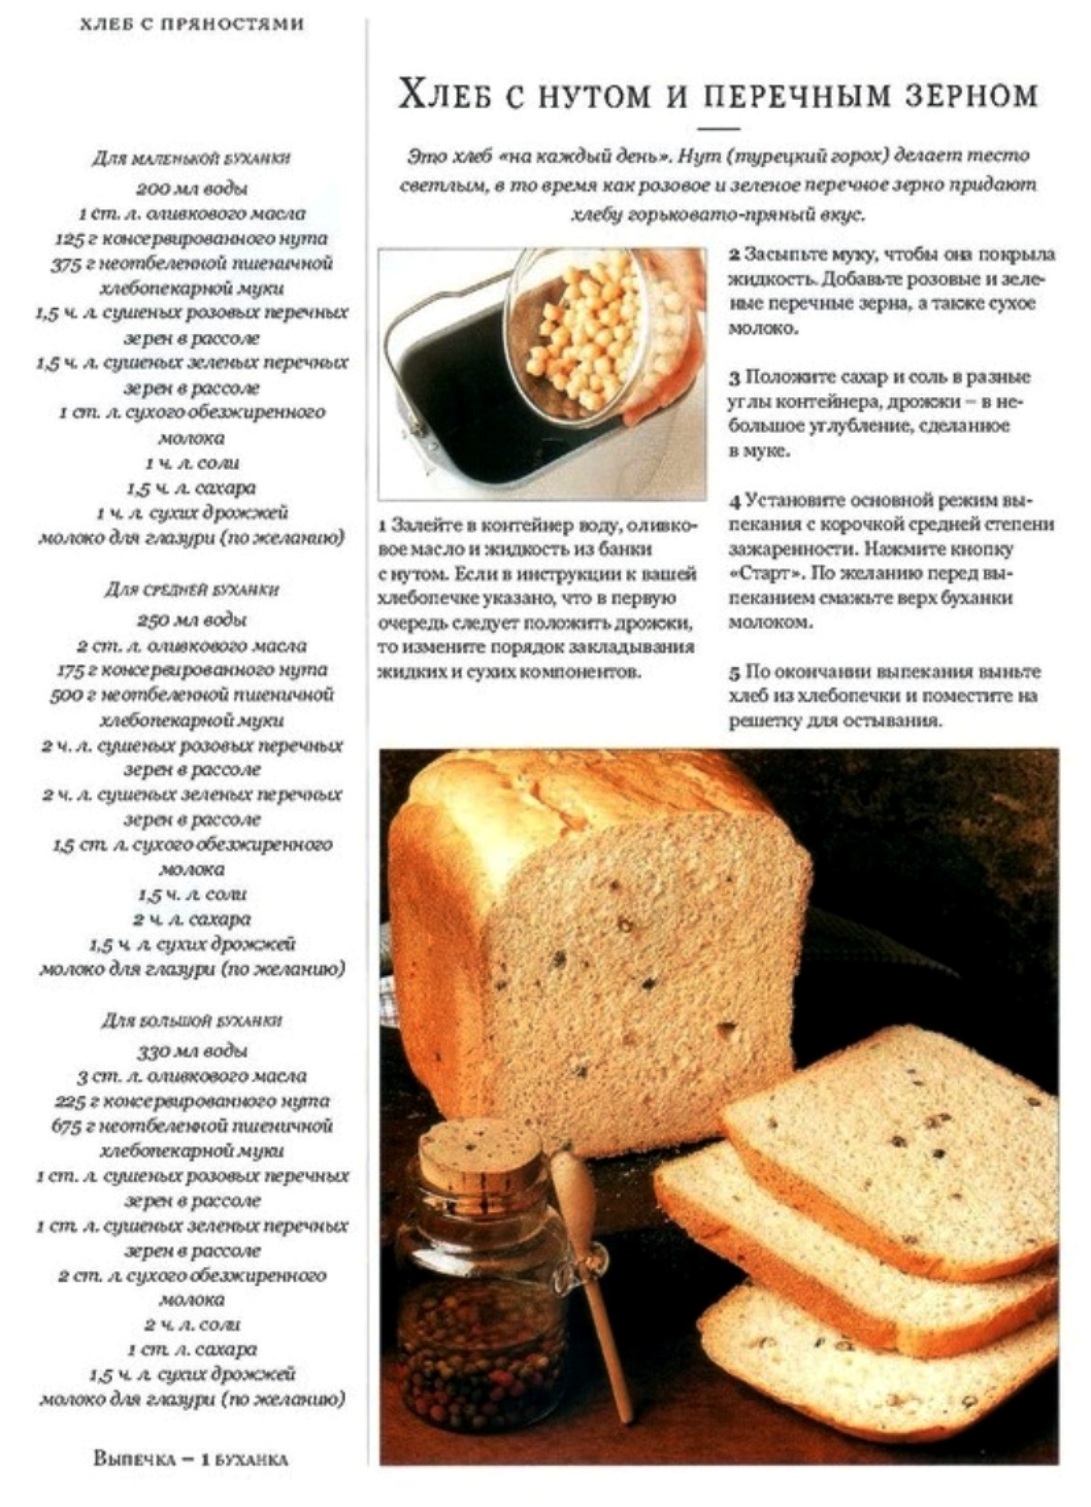 Приготовить в хлебопечке рецепты. Рецепт хлеба. Выпечка хлеба в хлебопечке-рецепты. Хлеб из хлебопечки. Рецепт хлеба в хлебопечке.